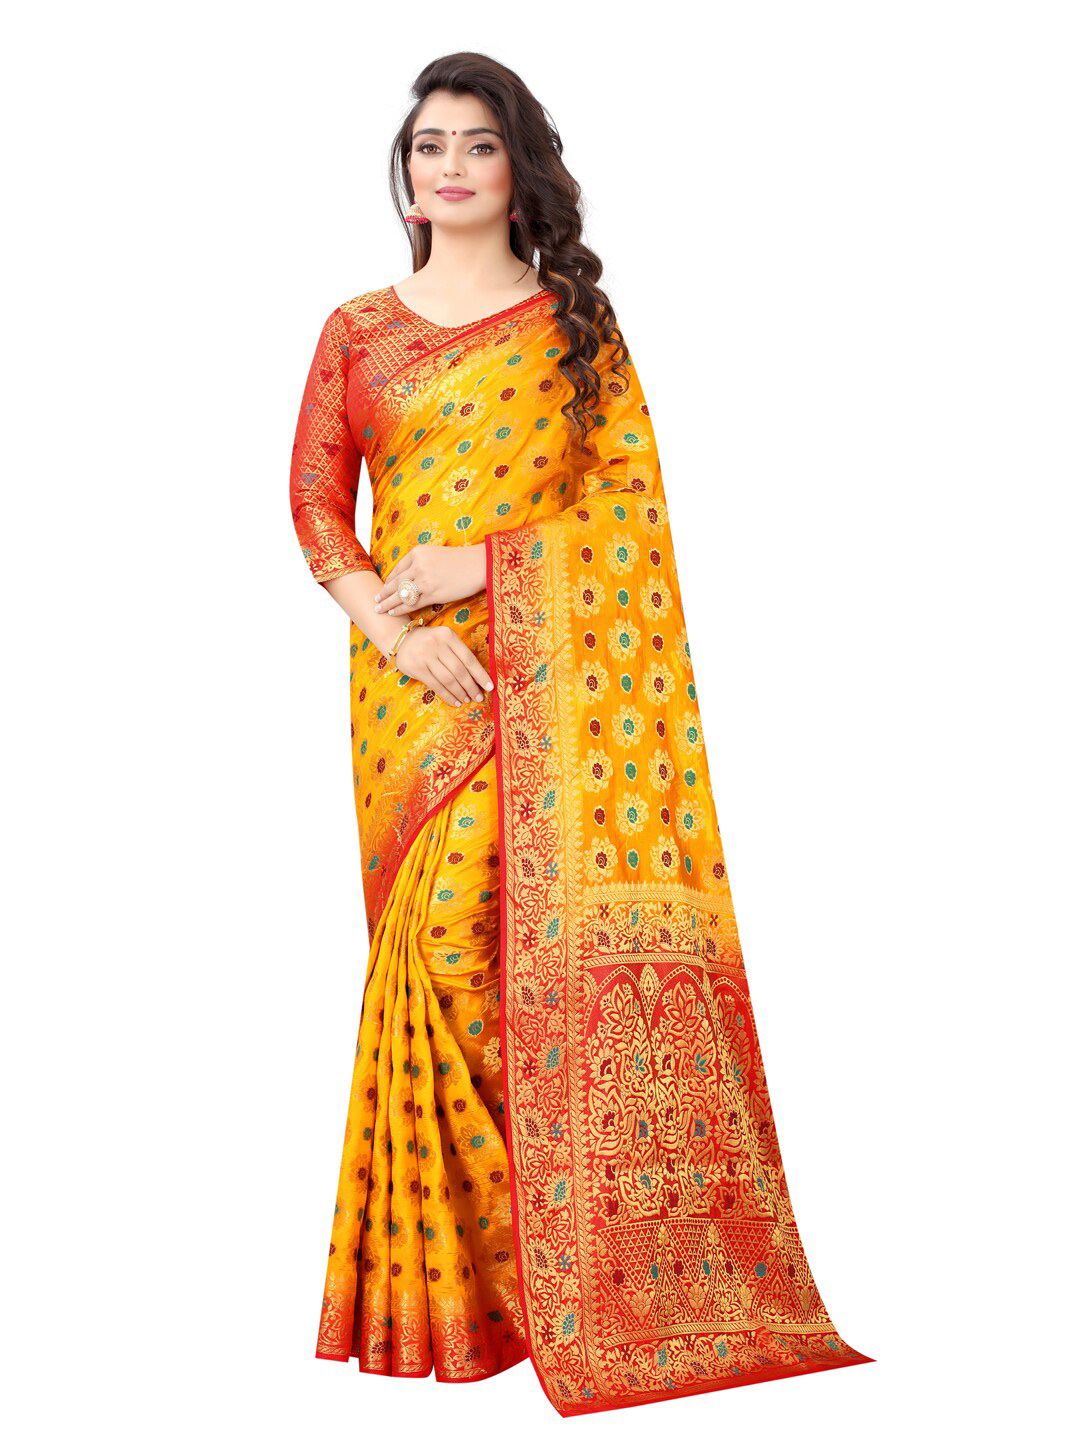 PERFECT WEAR Yellow & Red Floral Zari Silk Cotton Banarasi Saree Price in India